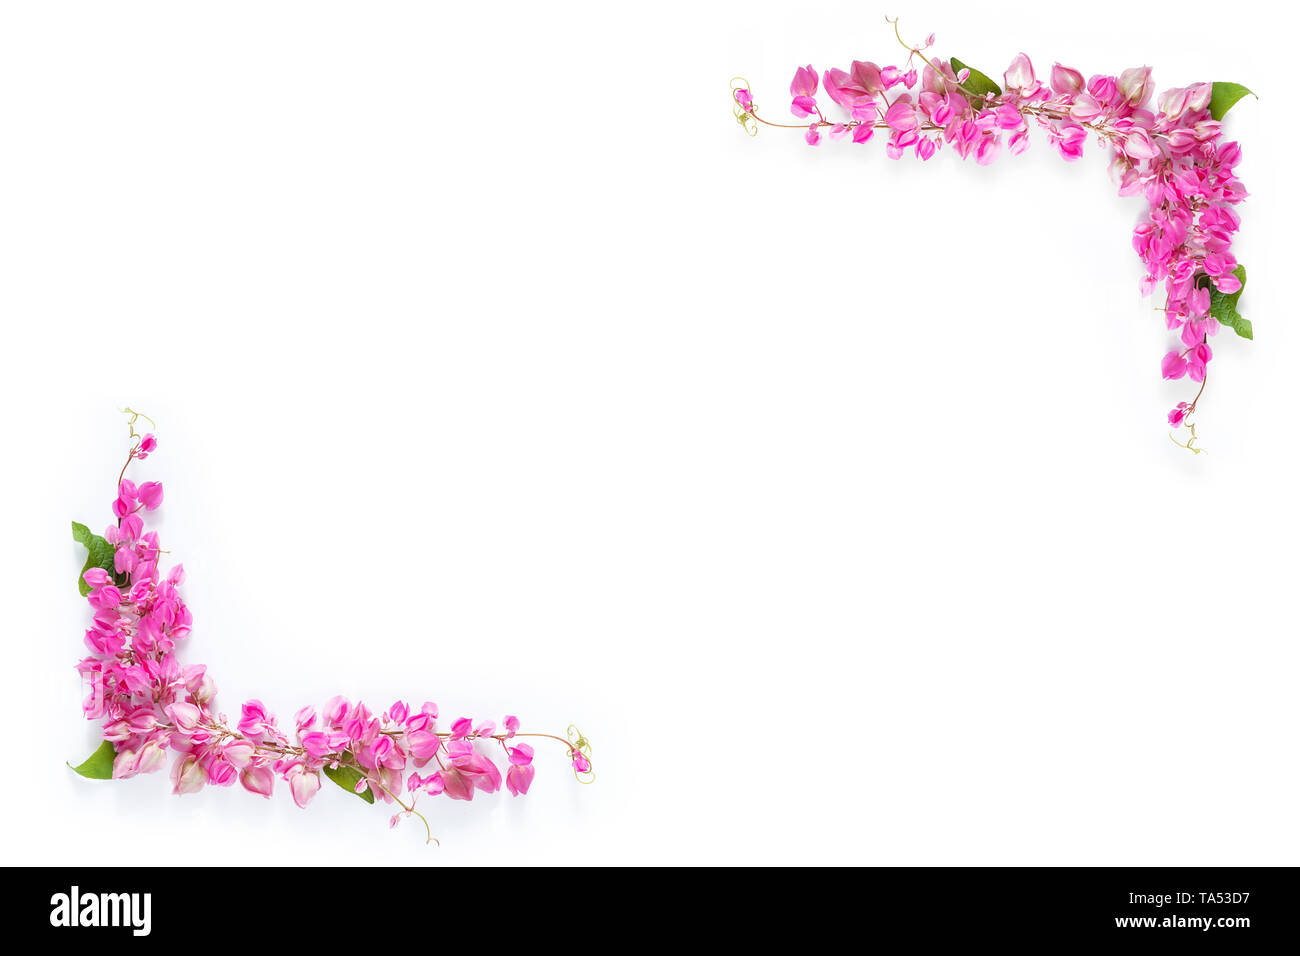 Floral fleur rose border frame comme coin sur fond blanc avec copie espace Banque D'Images